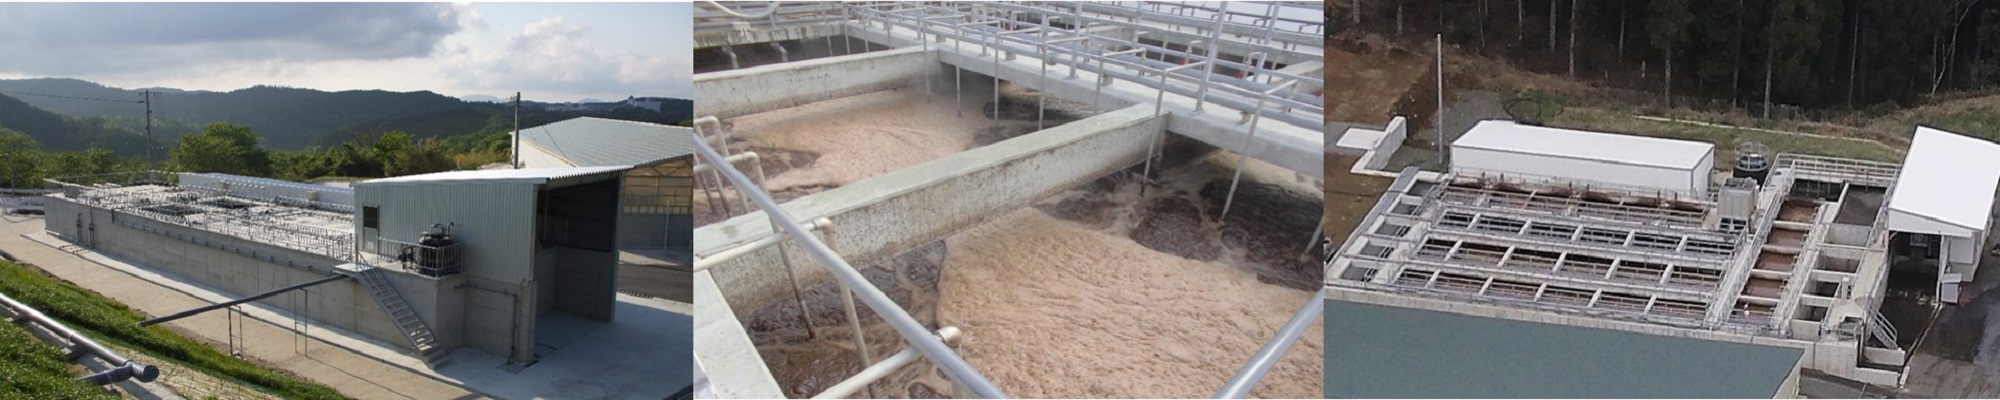 養豚排水処理システムの設置実例